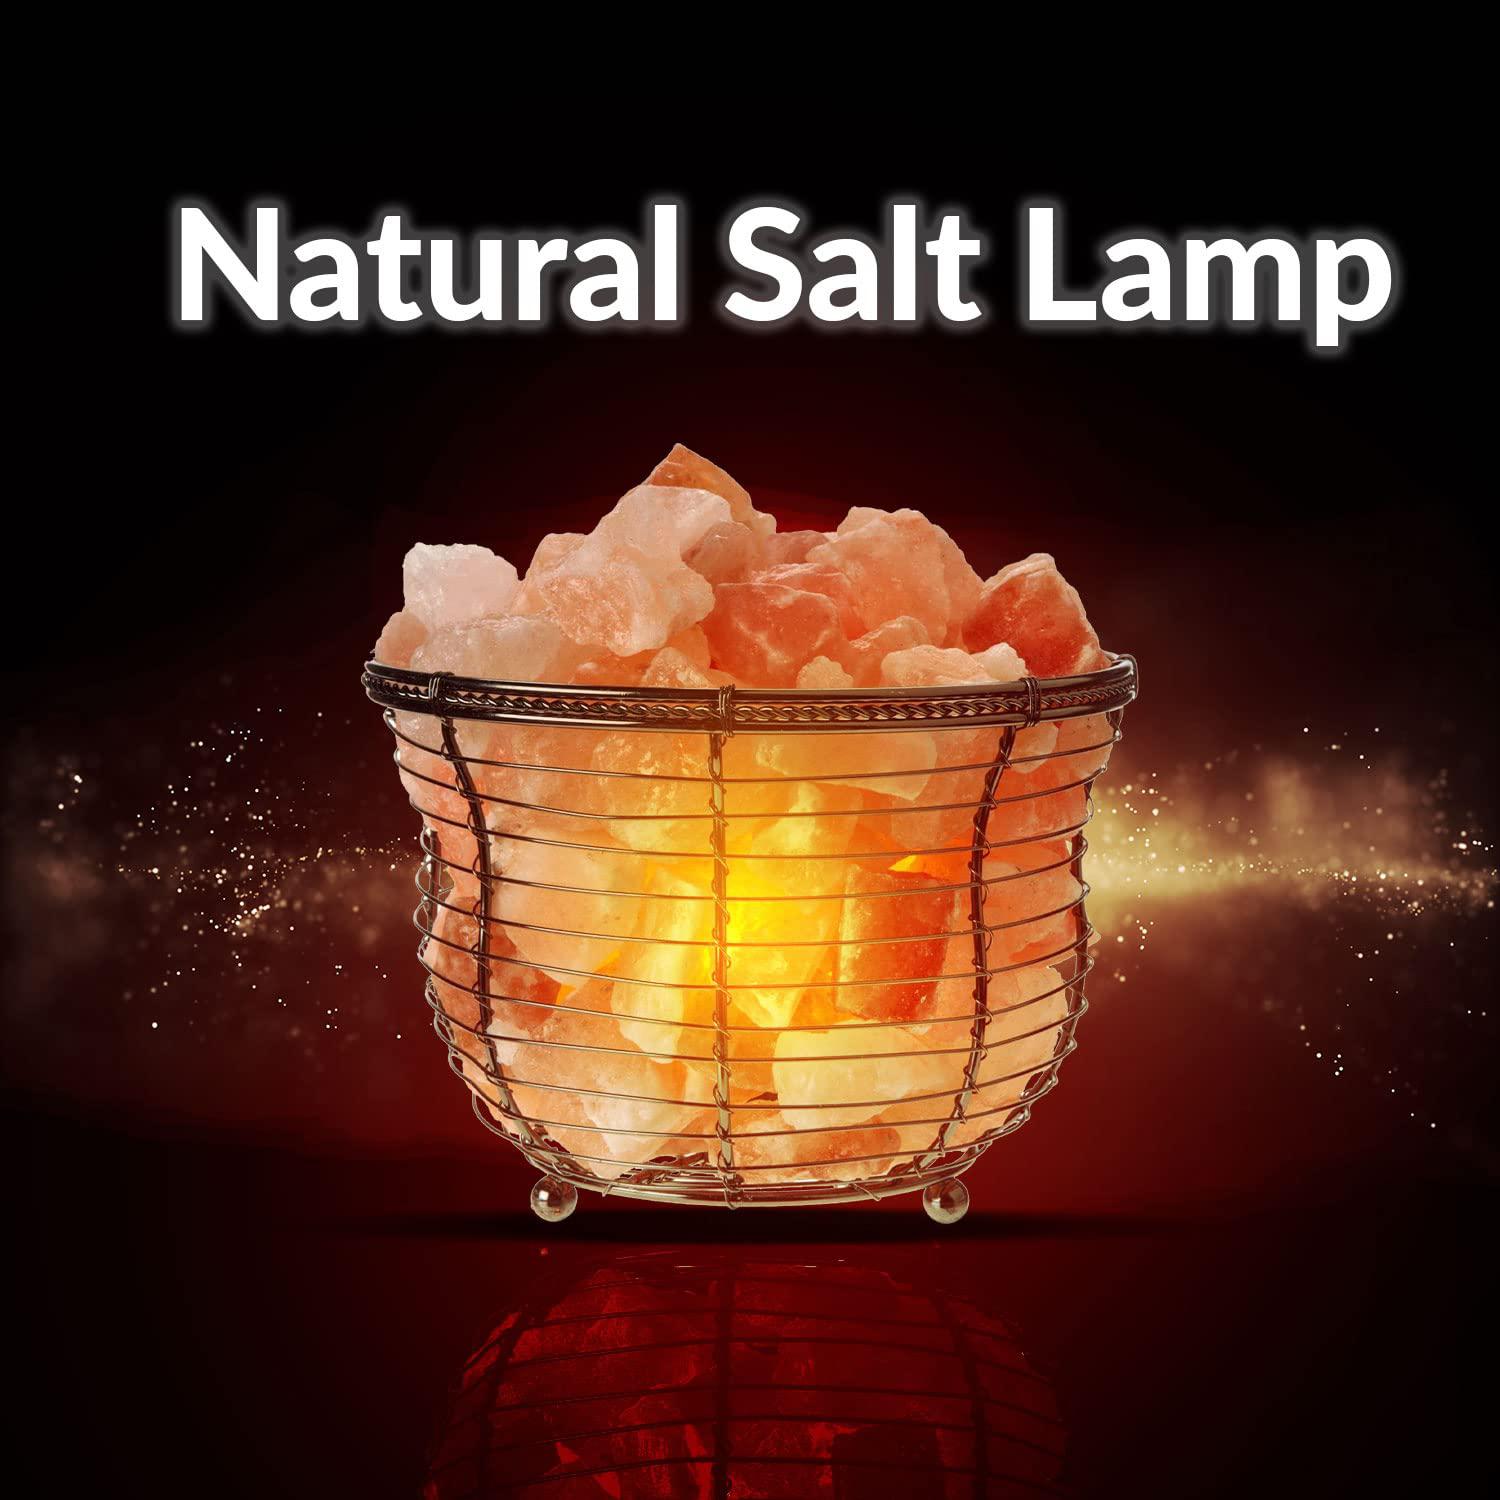 Himalayan Glow natural himalayan salt , tall round metal basket lamp with dimmer switch | 8-10 lbs